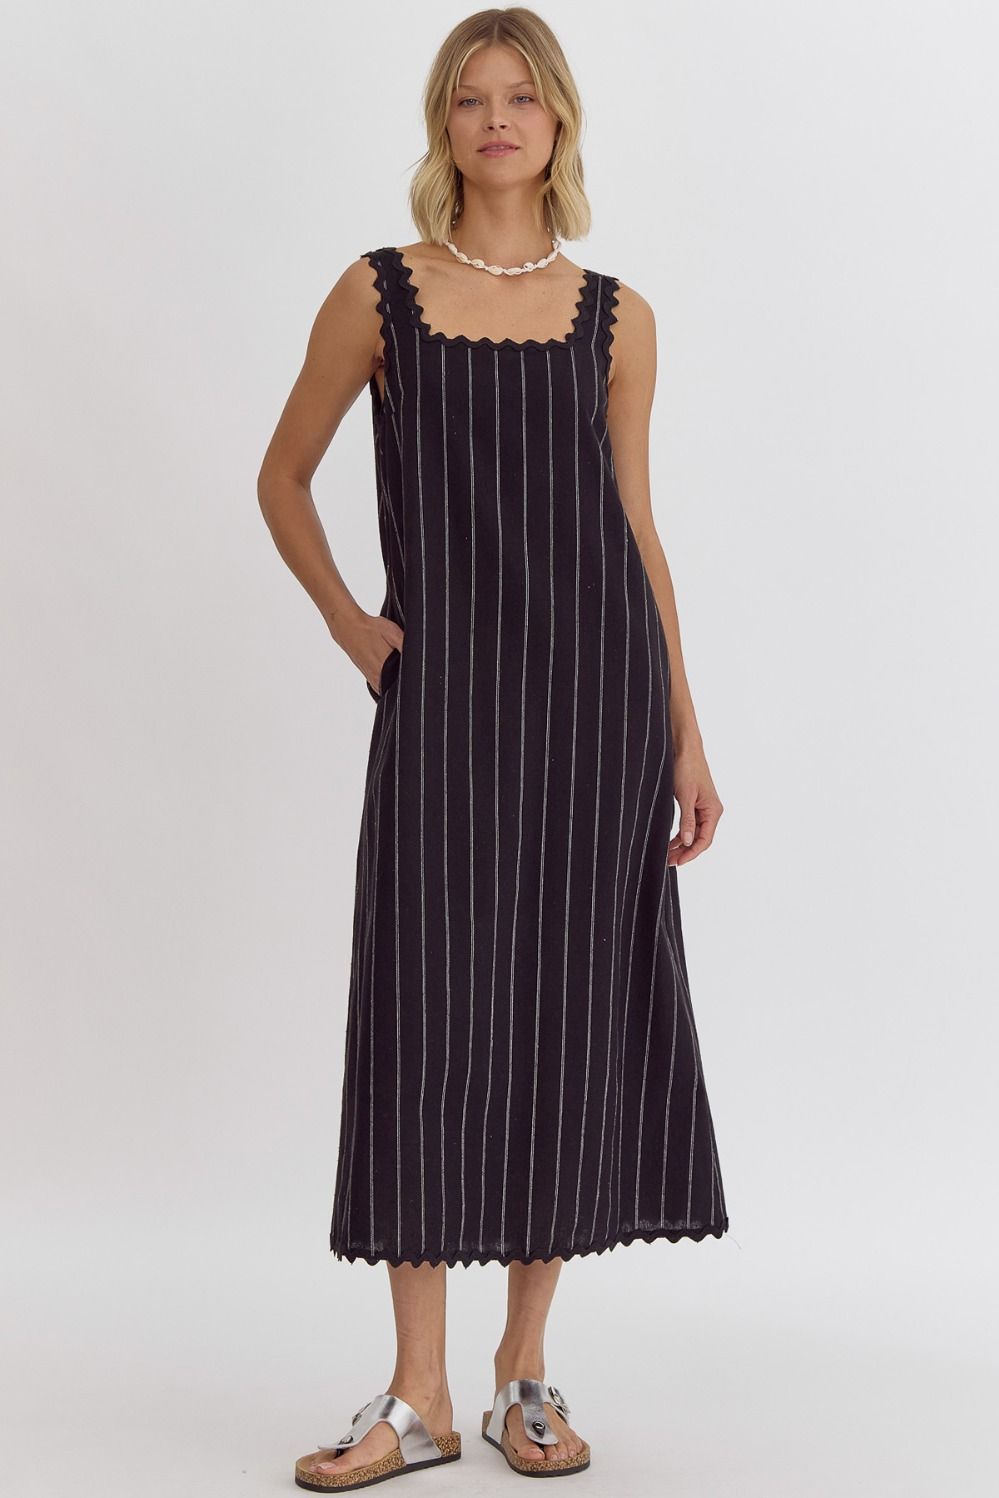 Boutique Chic Black Midi Dress